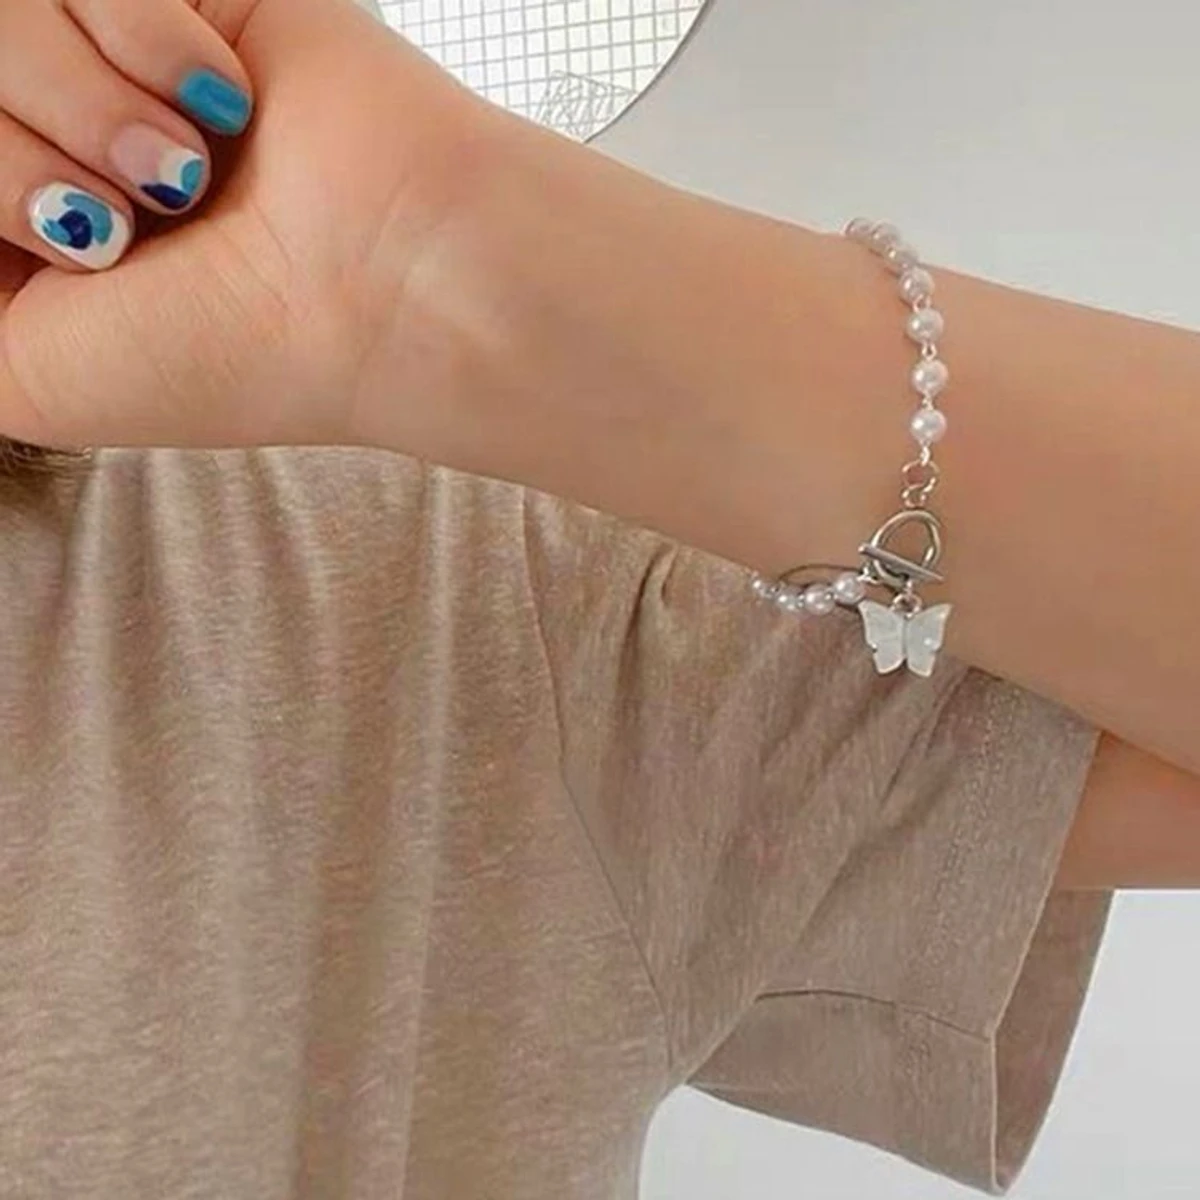 Pearl Puti Butterfly Stylish Bracelet For Women